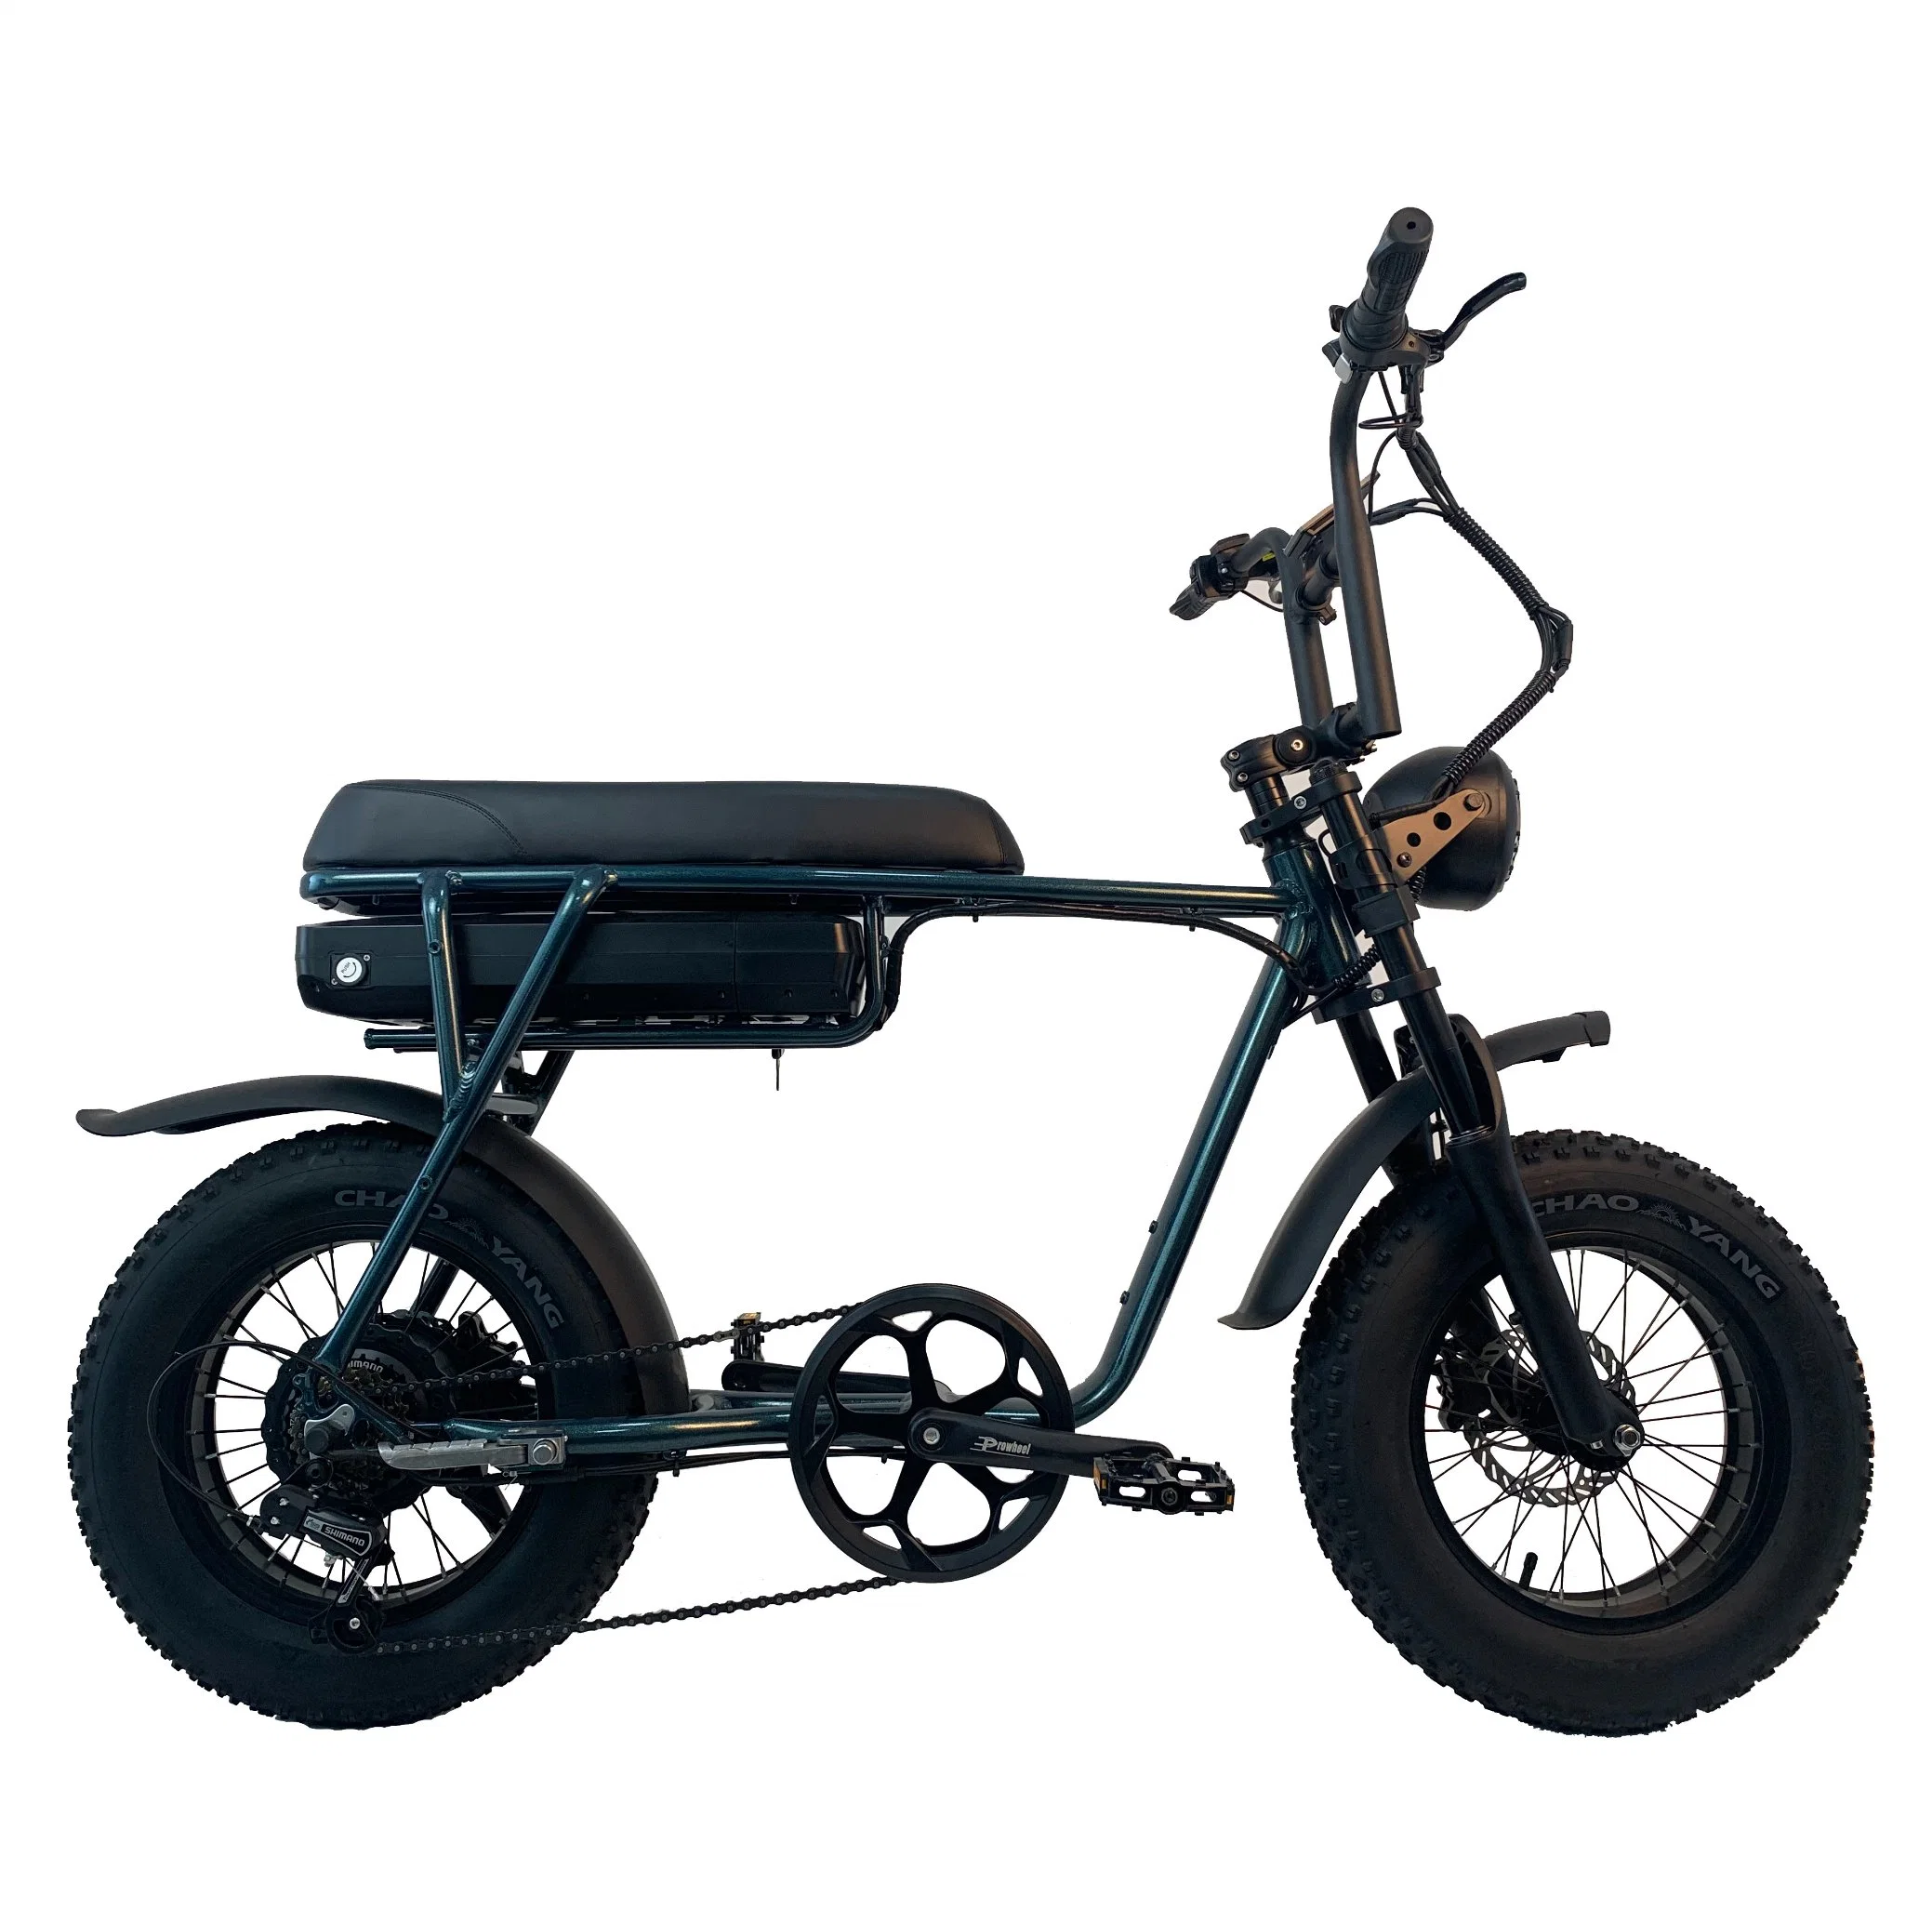 Fábrica Pasebike Estilo de moto e super-rápido 45km/h 1000W Electric Sujeira Bike Adulto Pneu gordura bicicleta eléctrica Ebike